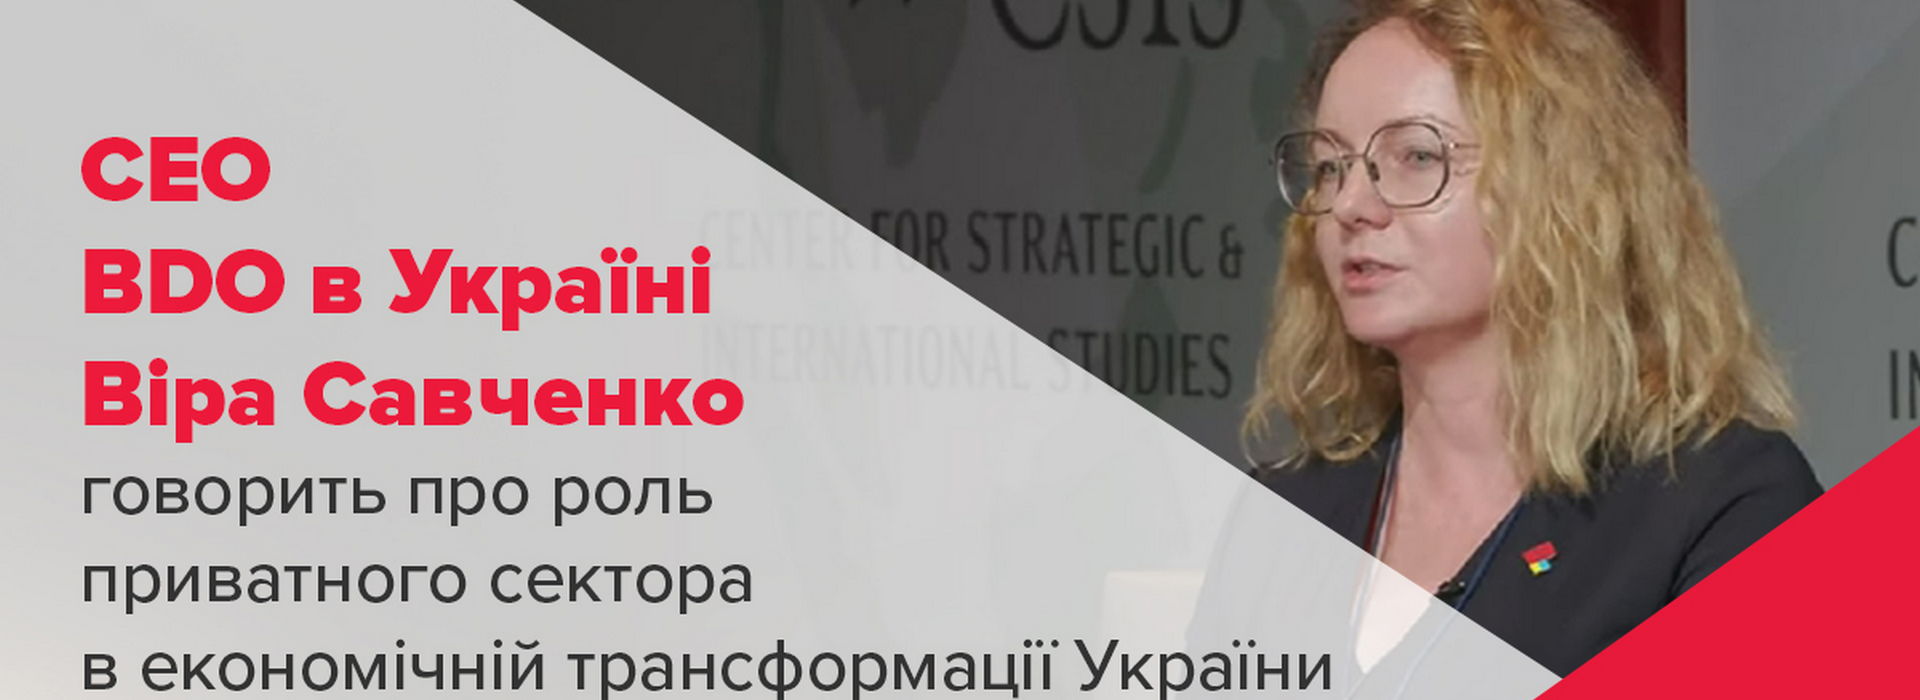 СЕО BDO в Україні Віра Савченко говорить про роль приватного сектора в економічній трансформації України